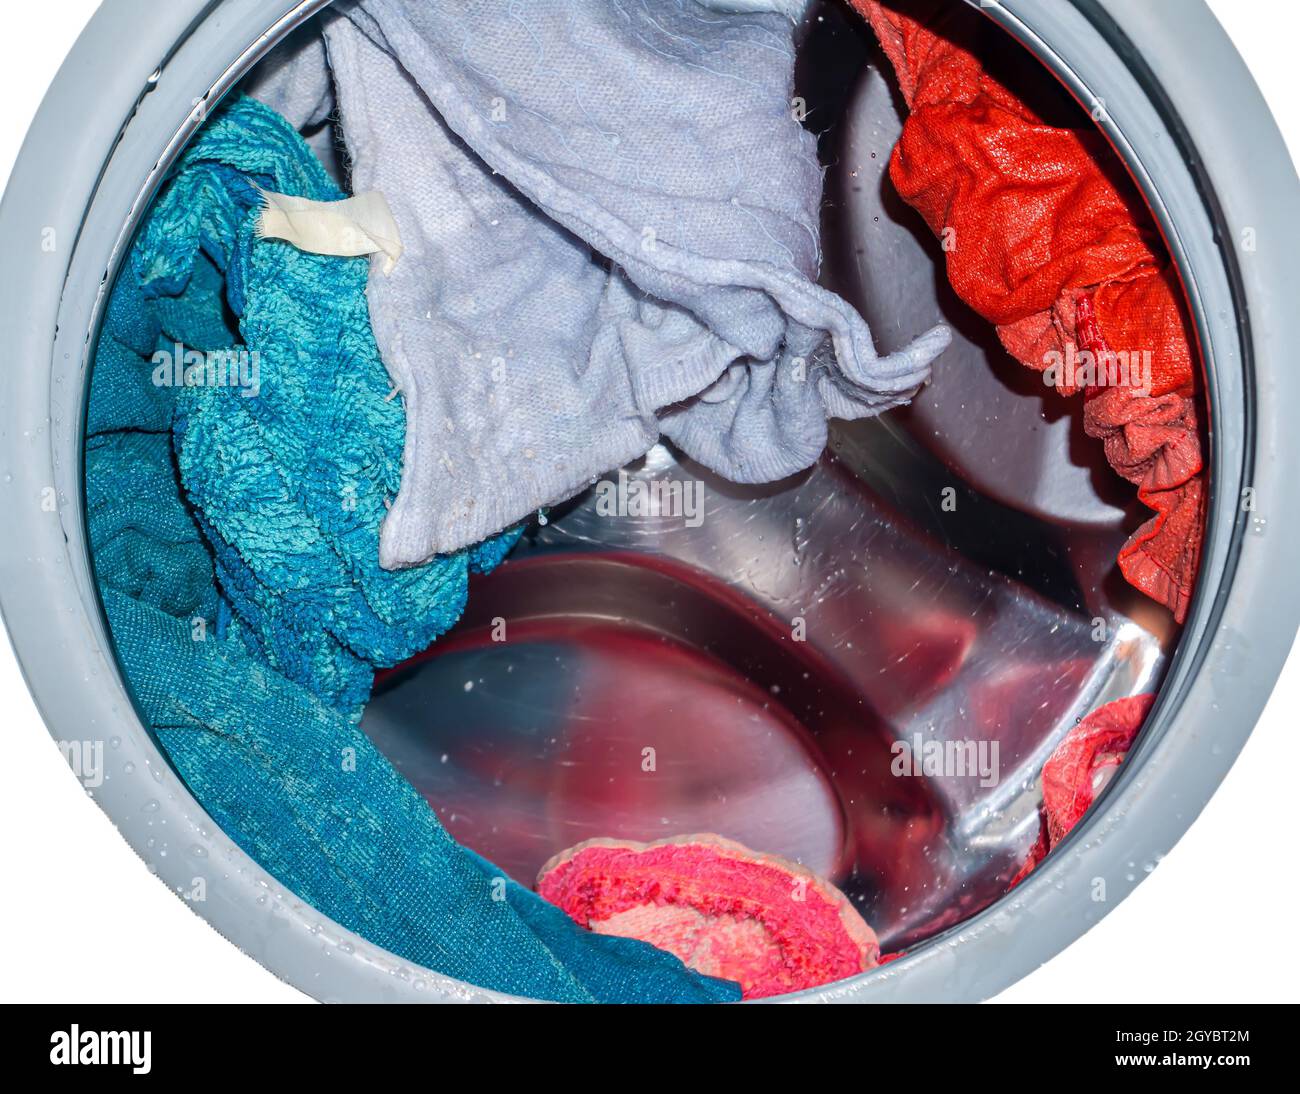 Rotierende Trommel in einer Waschmaschine Wanne mit Kleidung.  Unterlegscheibe. Automatische Wäsche. Service und Reparatur von Geräten.  Spritzwasser. Reparaturwerkstatt. Stainle Stockfotografie - Alamy